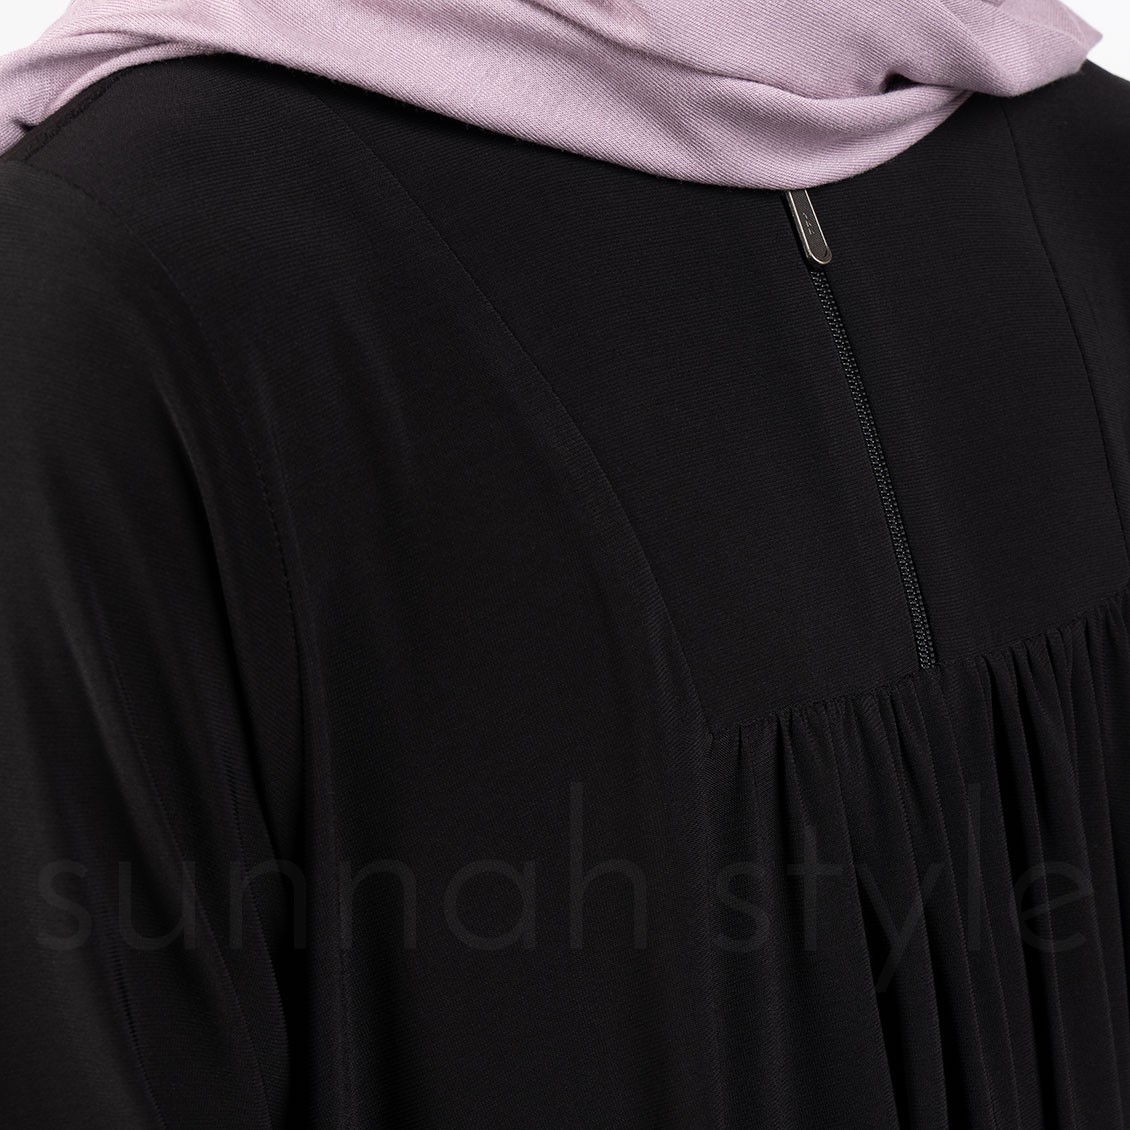 Sunnah Style Girls Flourish Jersey Abaya Black